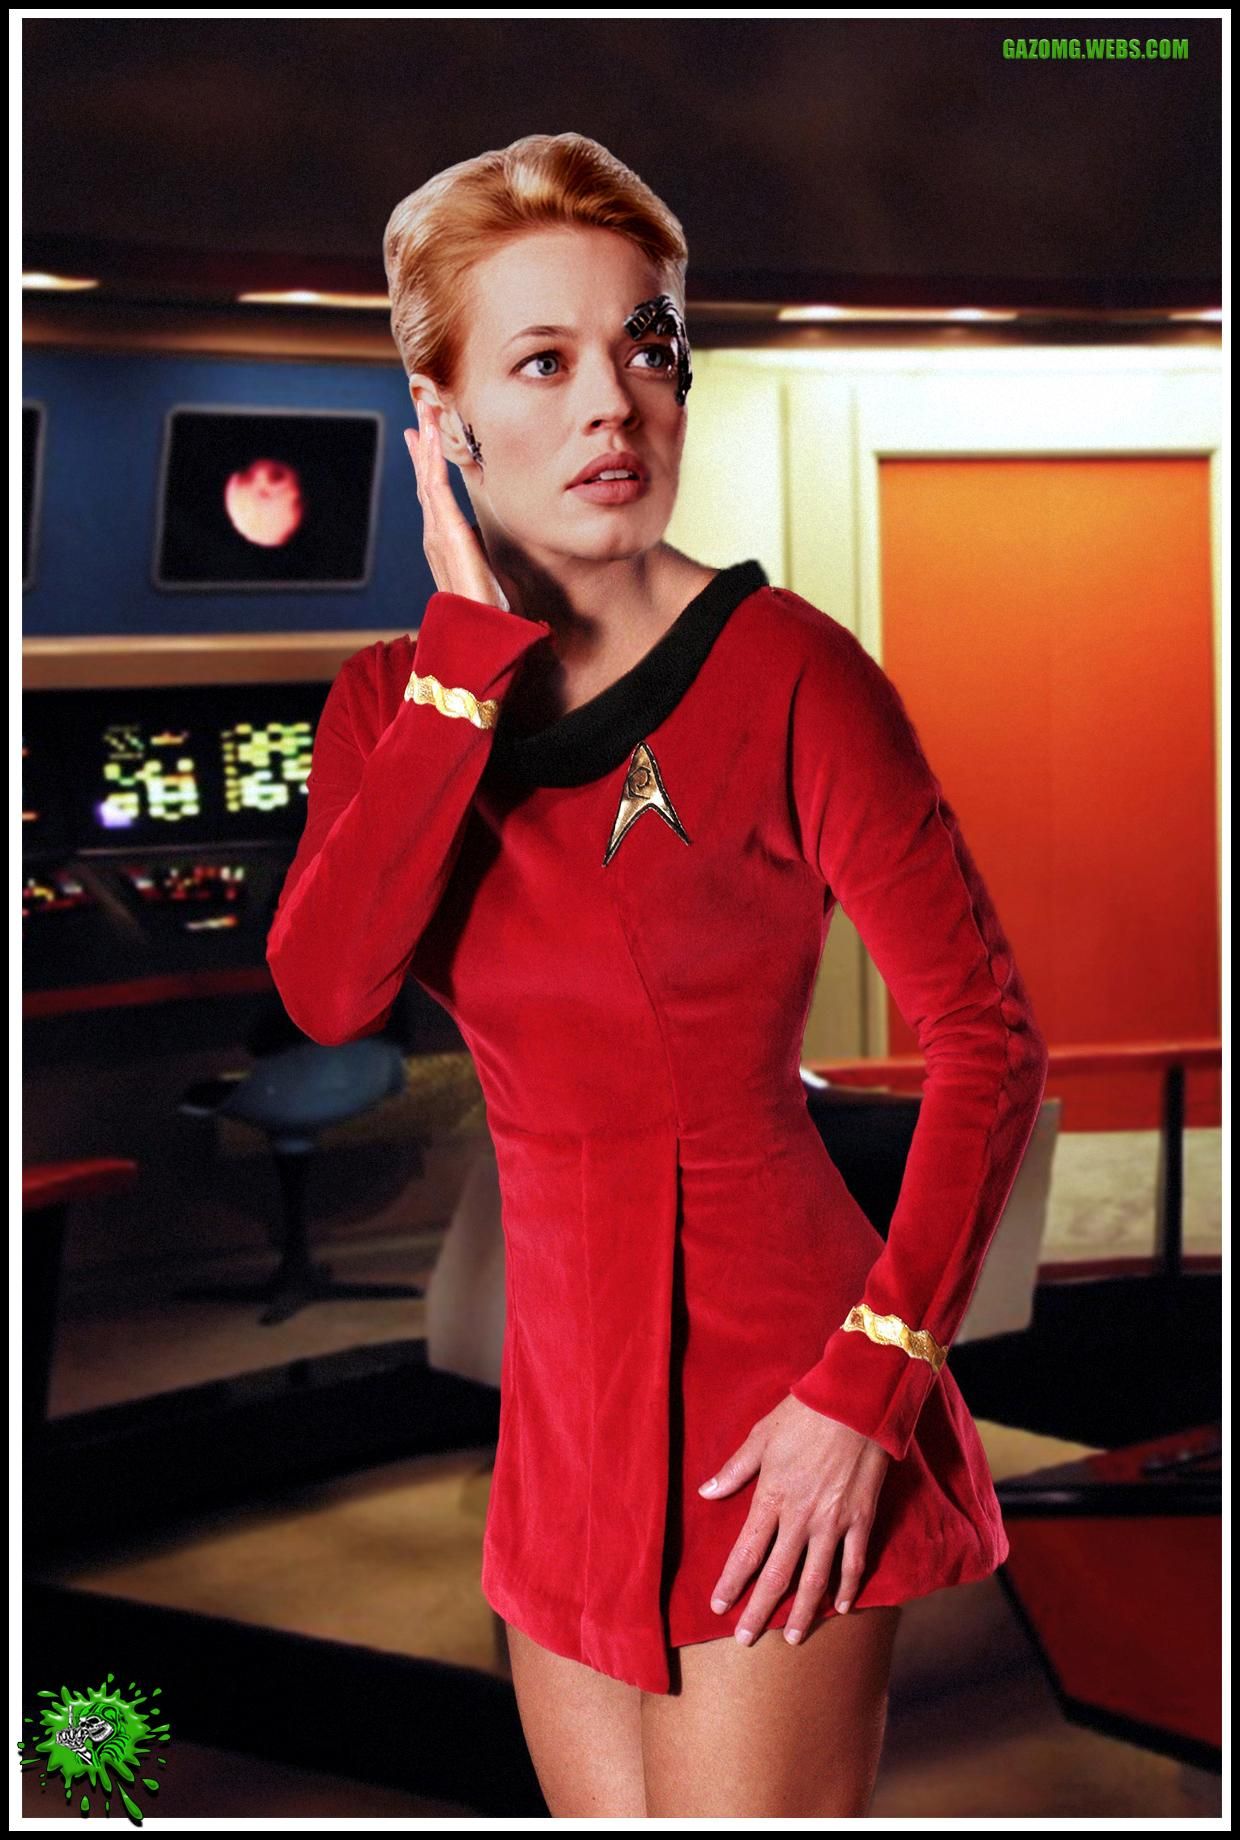 Jeri Ryan as a Red Shirt